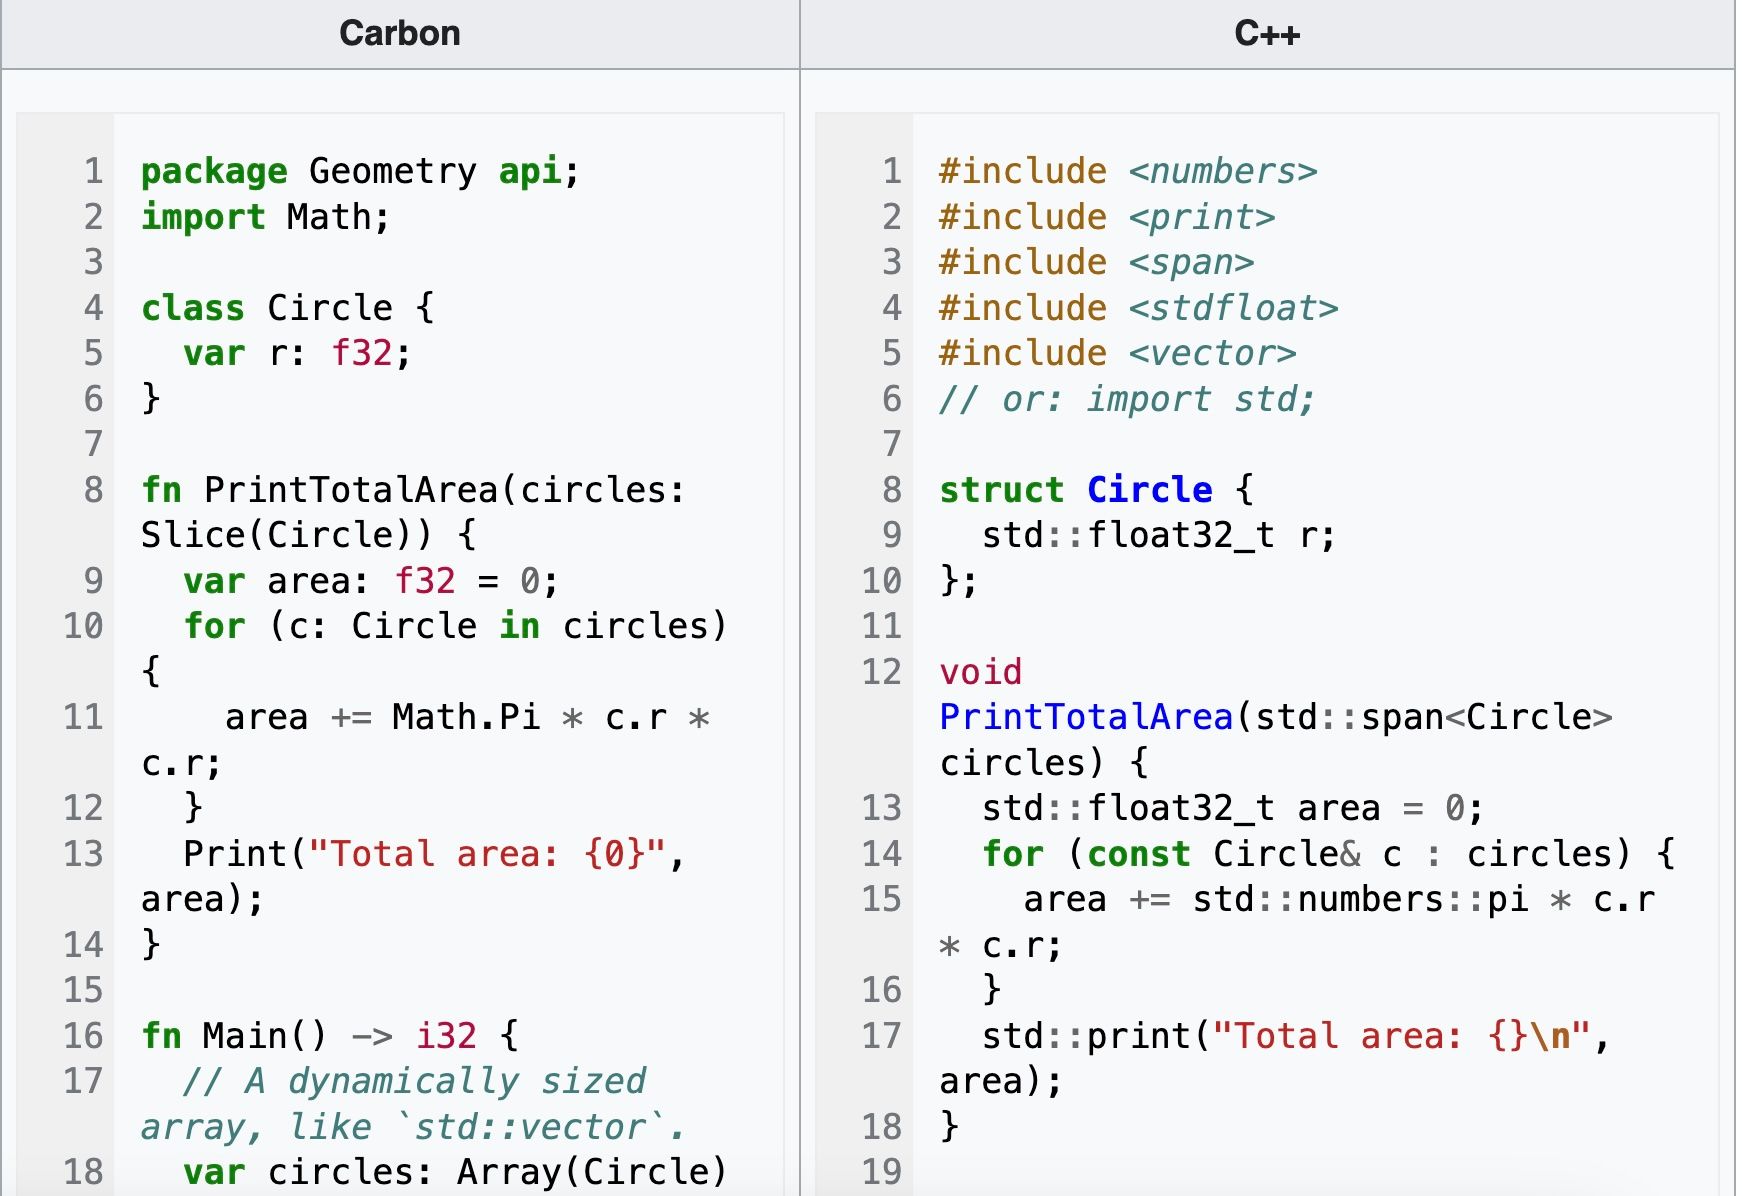 Uma captura de tela comparando Carbon com C++.